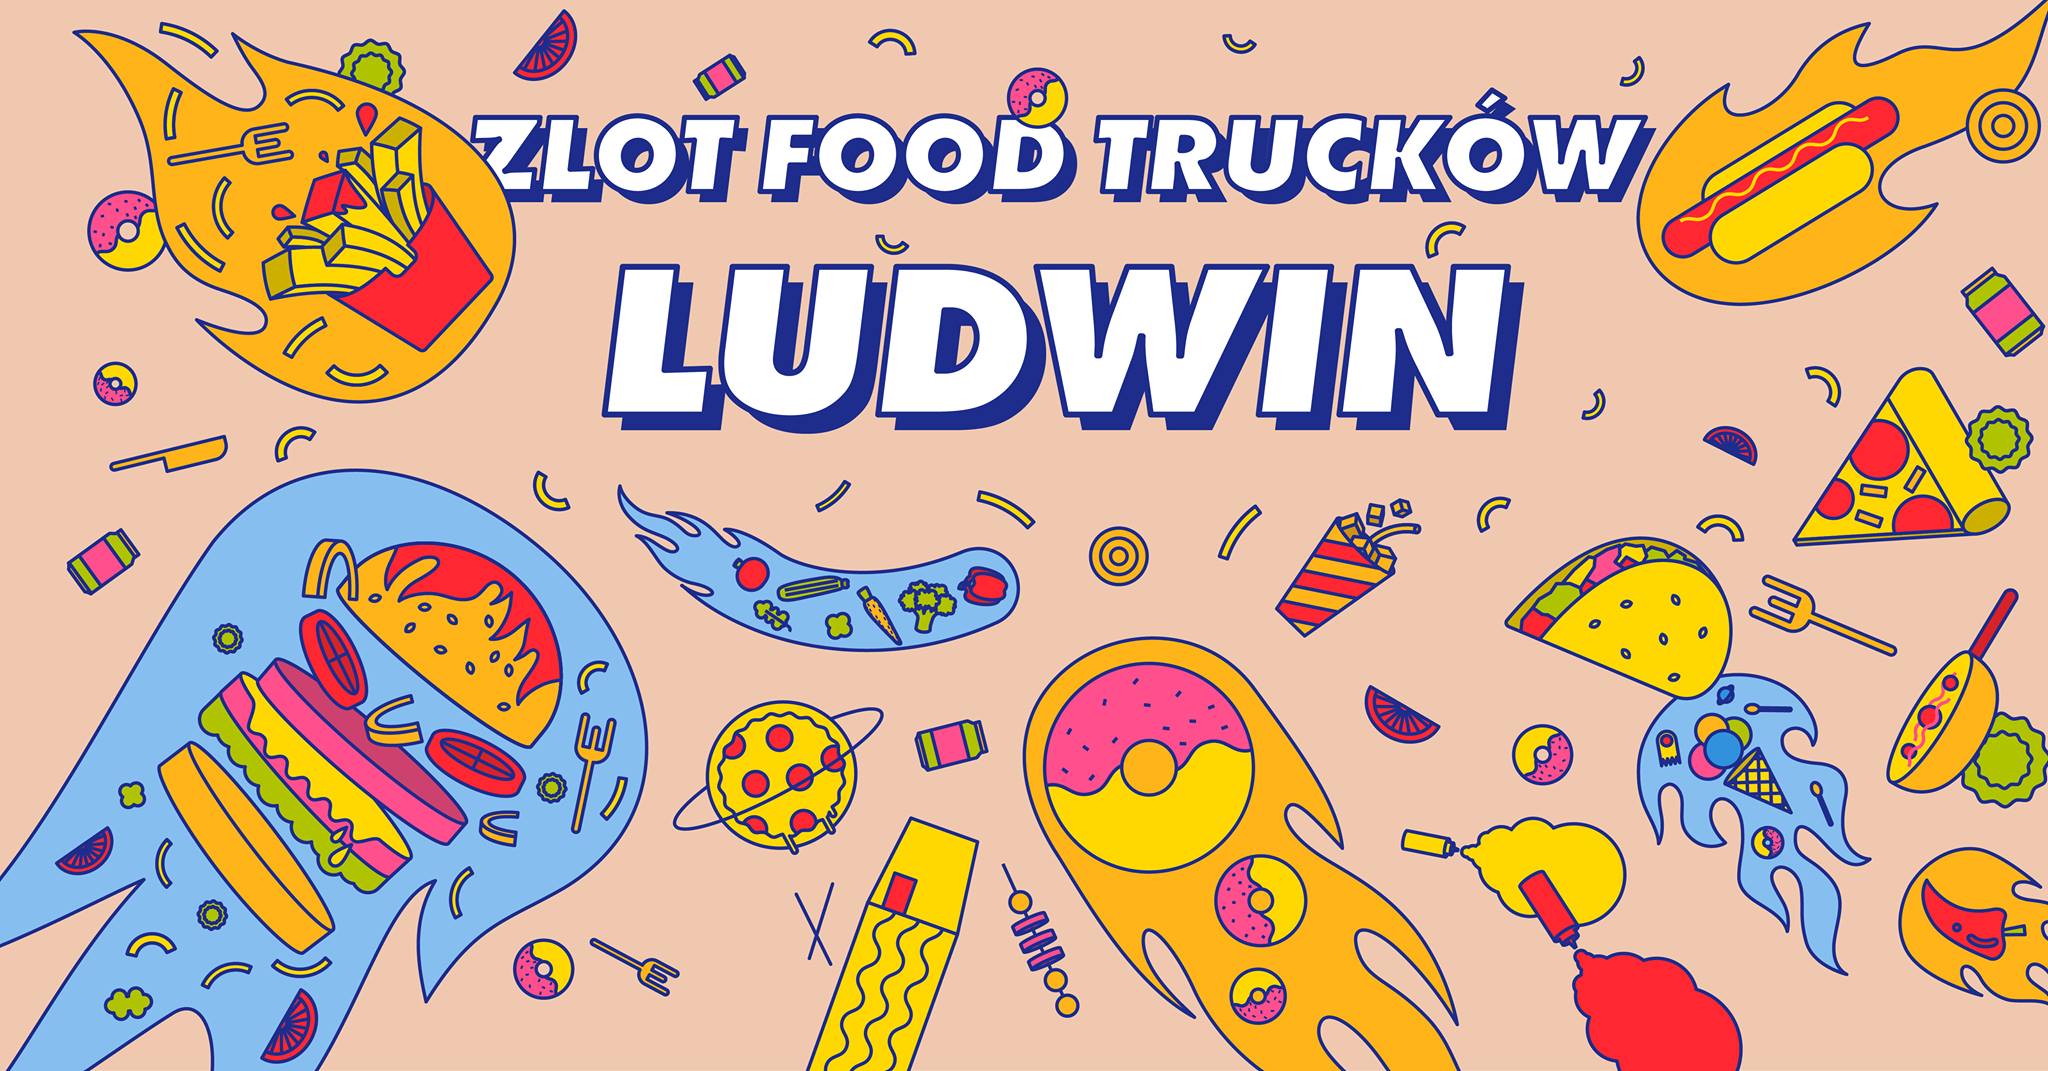 Food trucki w Ludwinie – smaczne pożegnanie lata - Zdjęcie główne